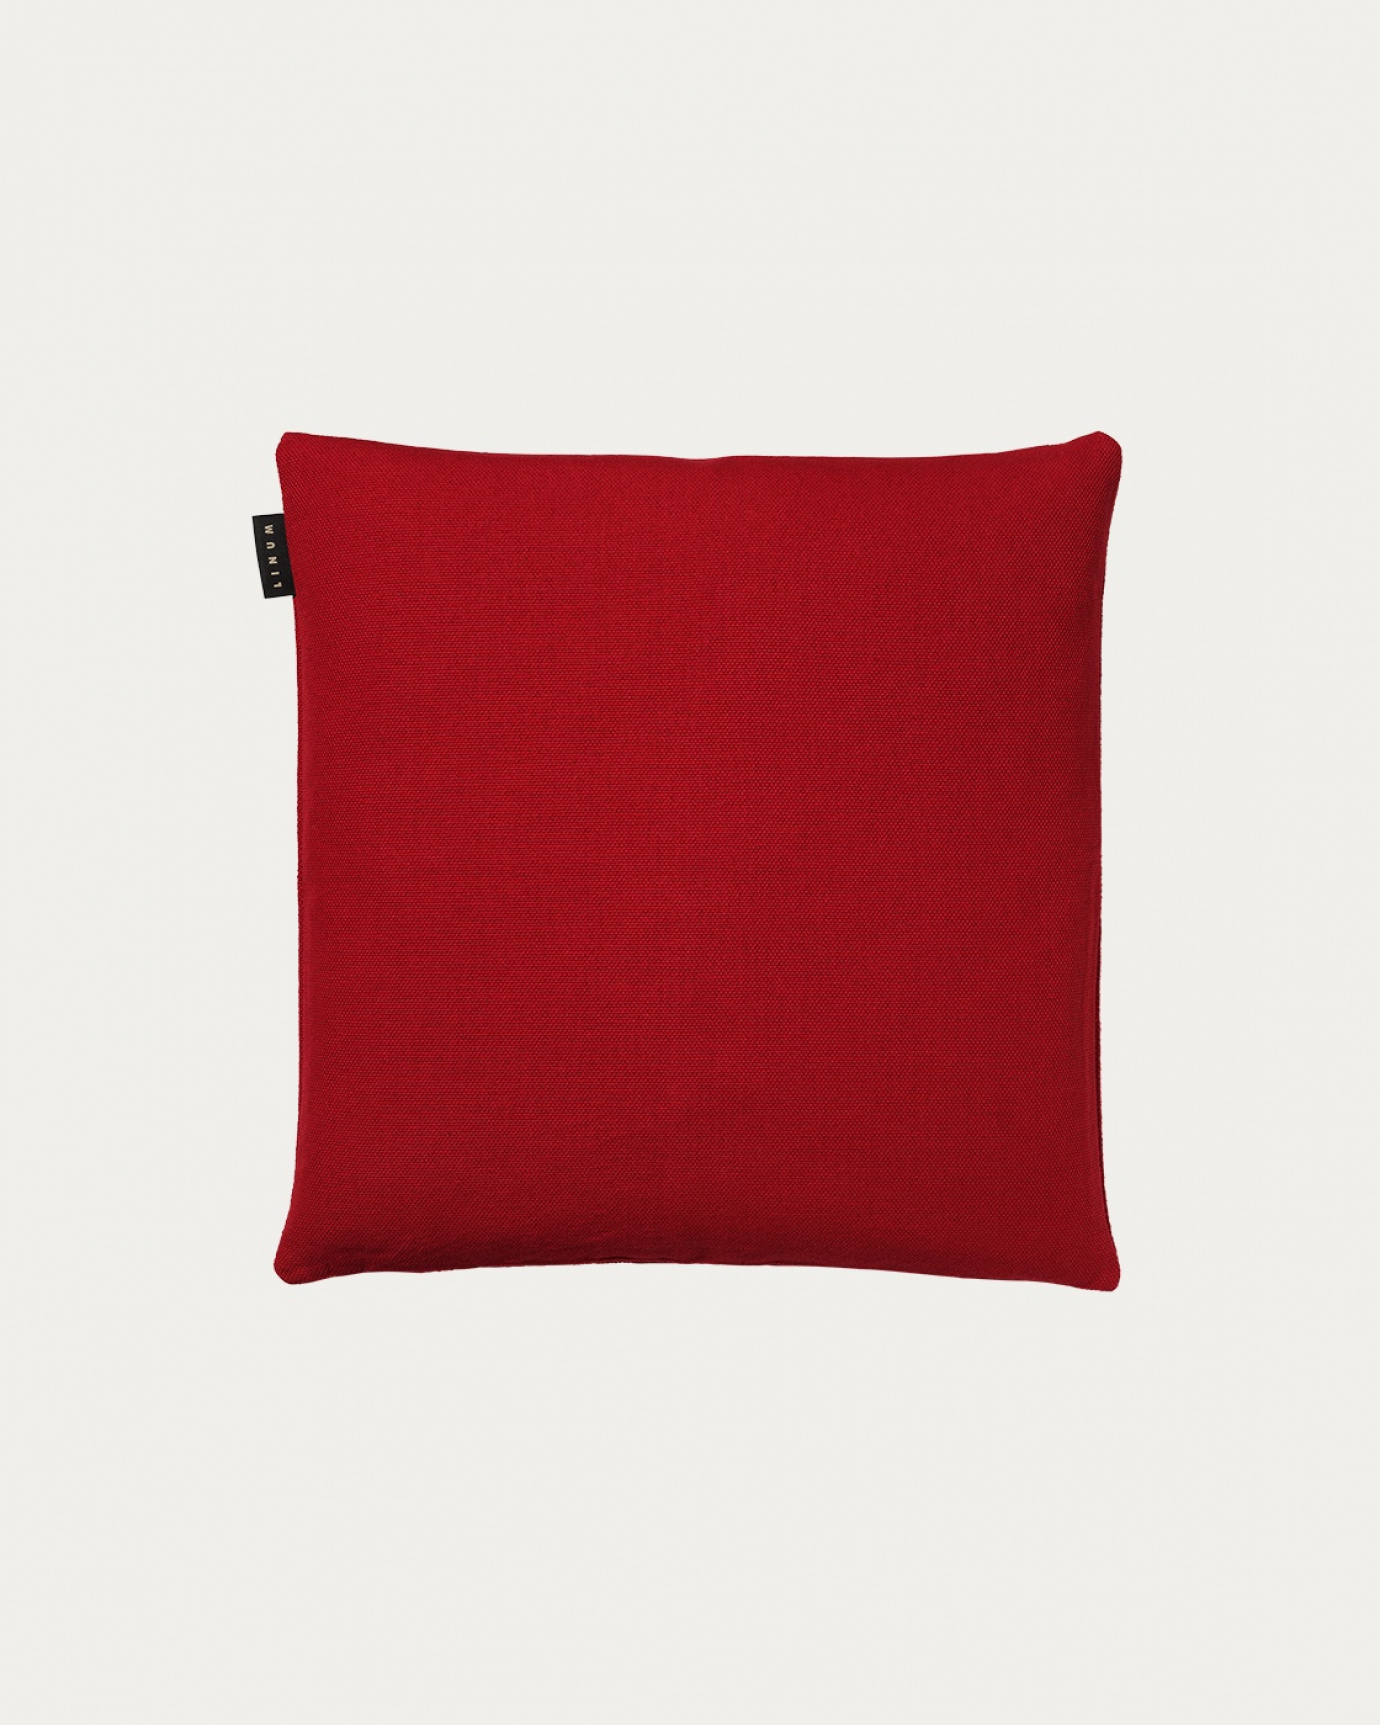 Produktbild rot PEPPER Kissenhülle aus weicher Baumwolle von LINUM DESIGN. Einfach zu waschen und langlebig für Generationen. Größe 40x40 cm.